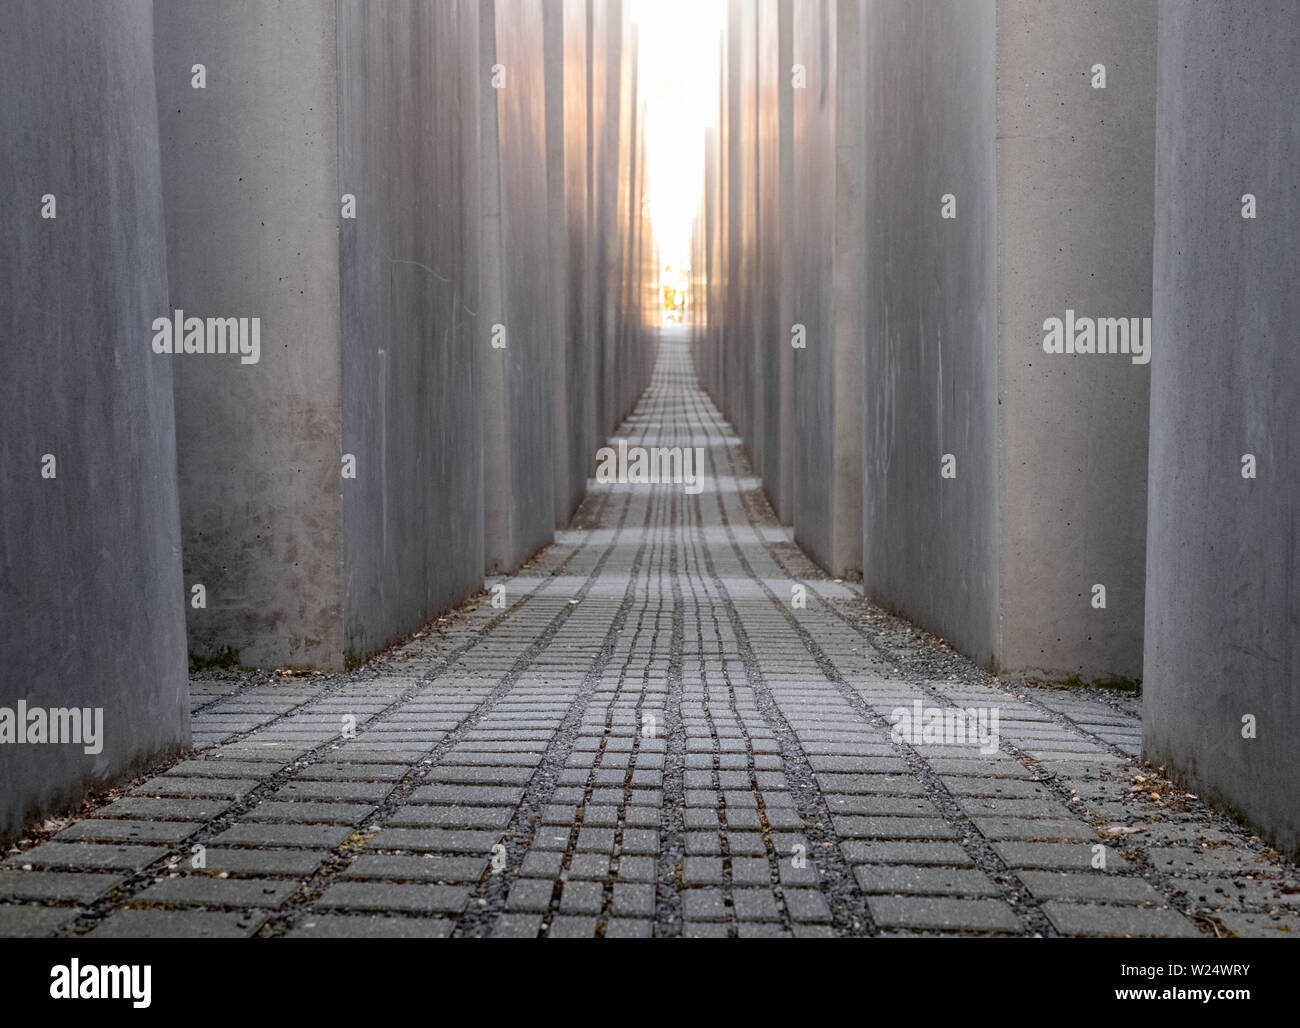 Betonplatten am Denkmal für die ermordeten Juden Europas von Peter Eisenman. Das Denkmal ist in der späten Nachmittagssonne fotografiert. Stockfoto